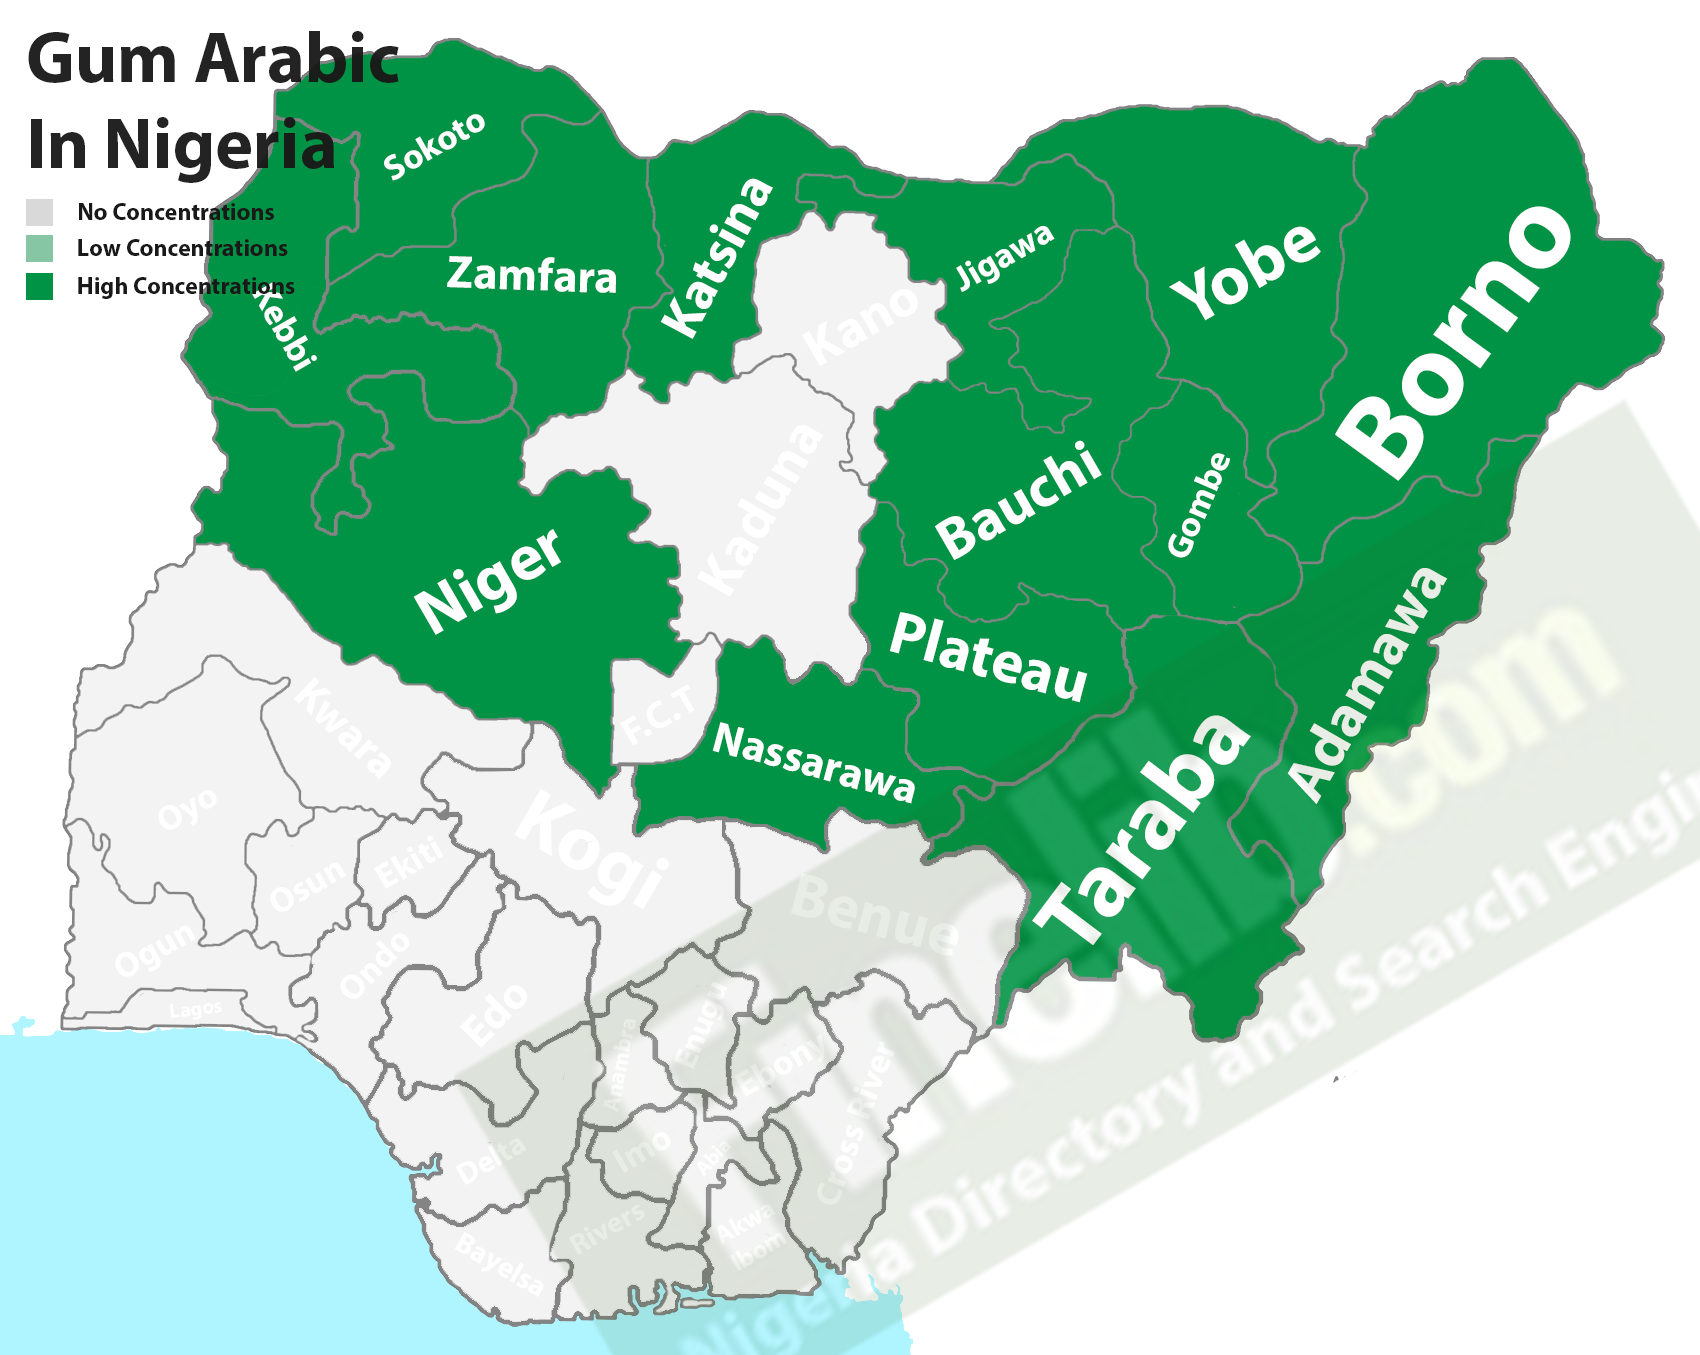 Gum Arabic cash crops in Nigeria